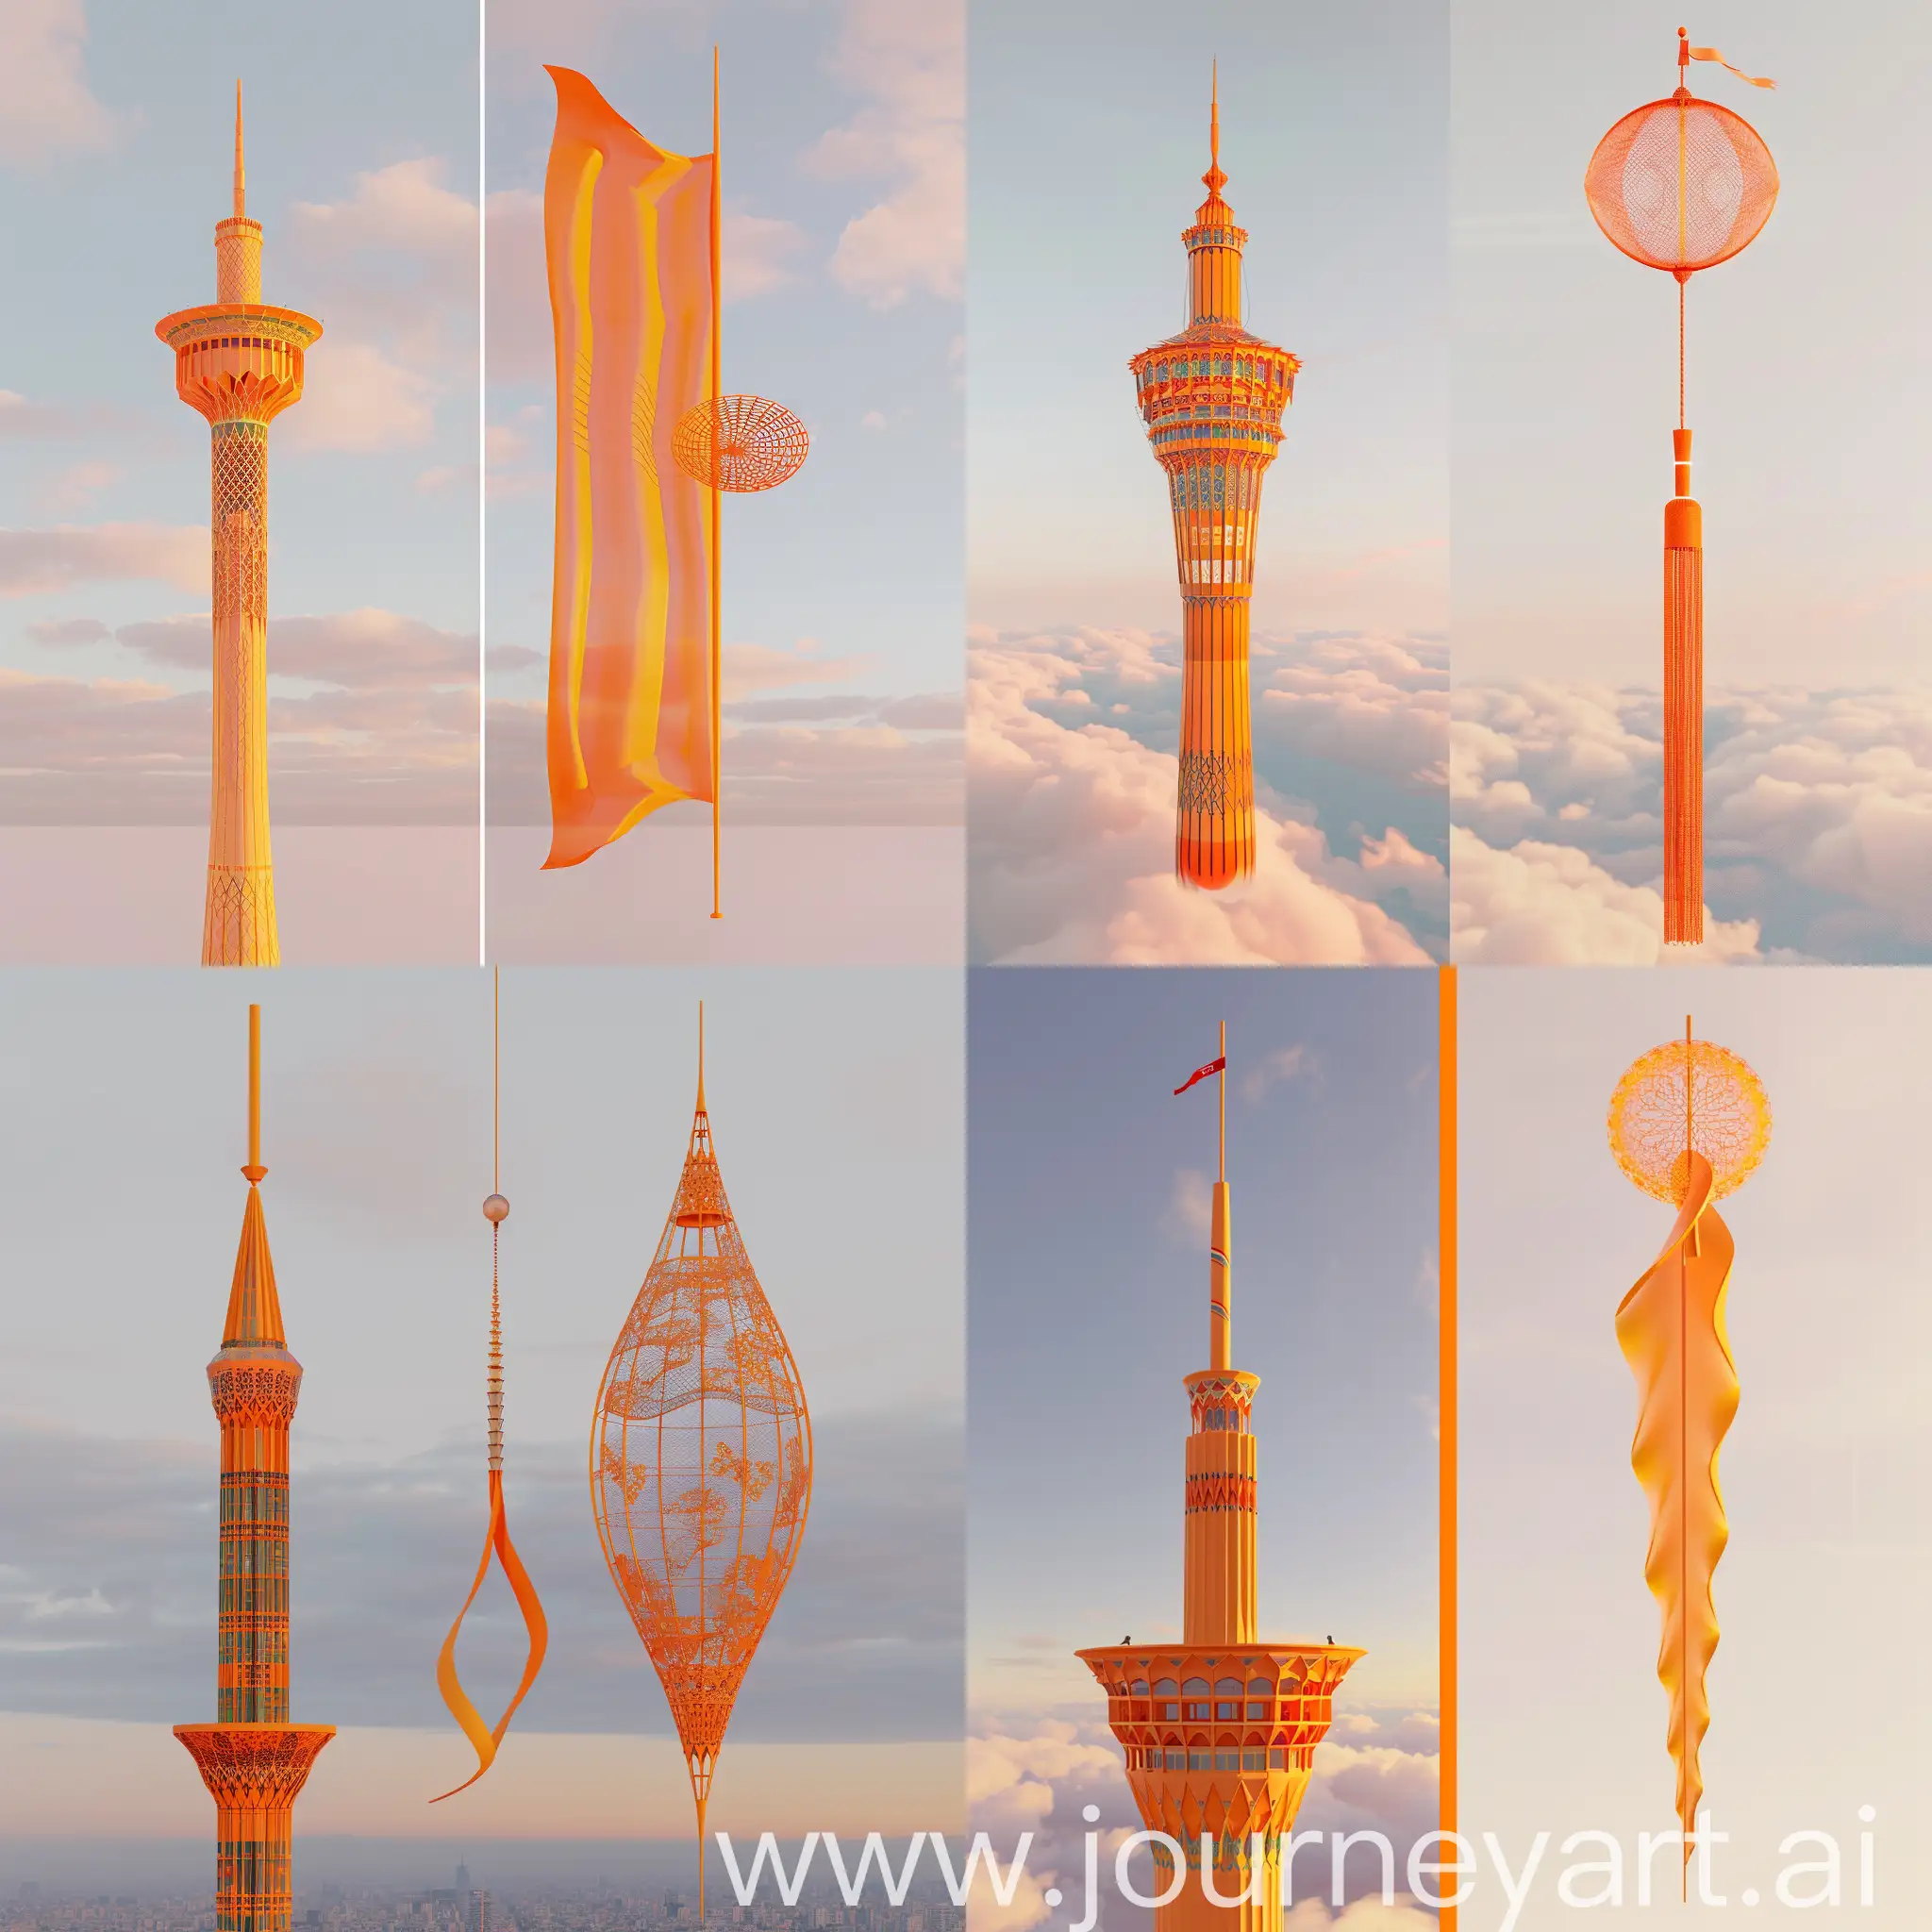 یک بنر برام طراحی کن که سمت چپ آن برج میلاد تهران باشد اما به رنگ نارنجی و در سمت راست آن هم یک بادگیر به رنگ نارنجی باشد و پس زمینه این  کار هم اسمان باشد با نور ملایم روز طرح به صورت سه بعدی باشد 